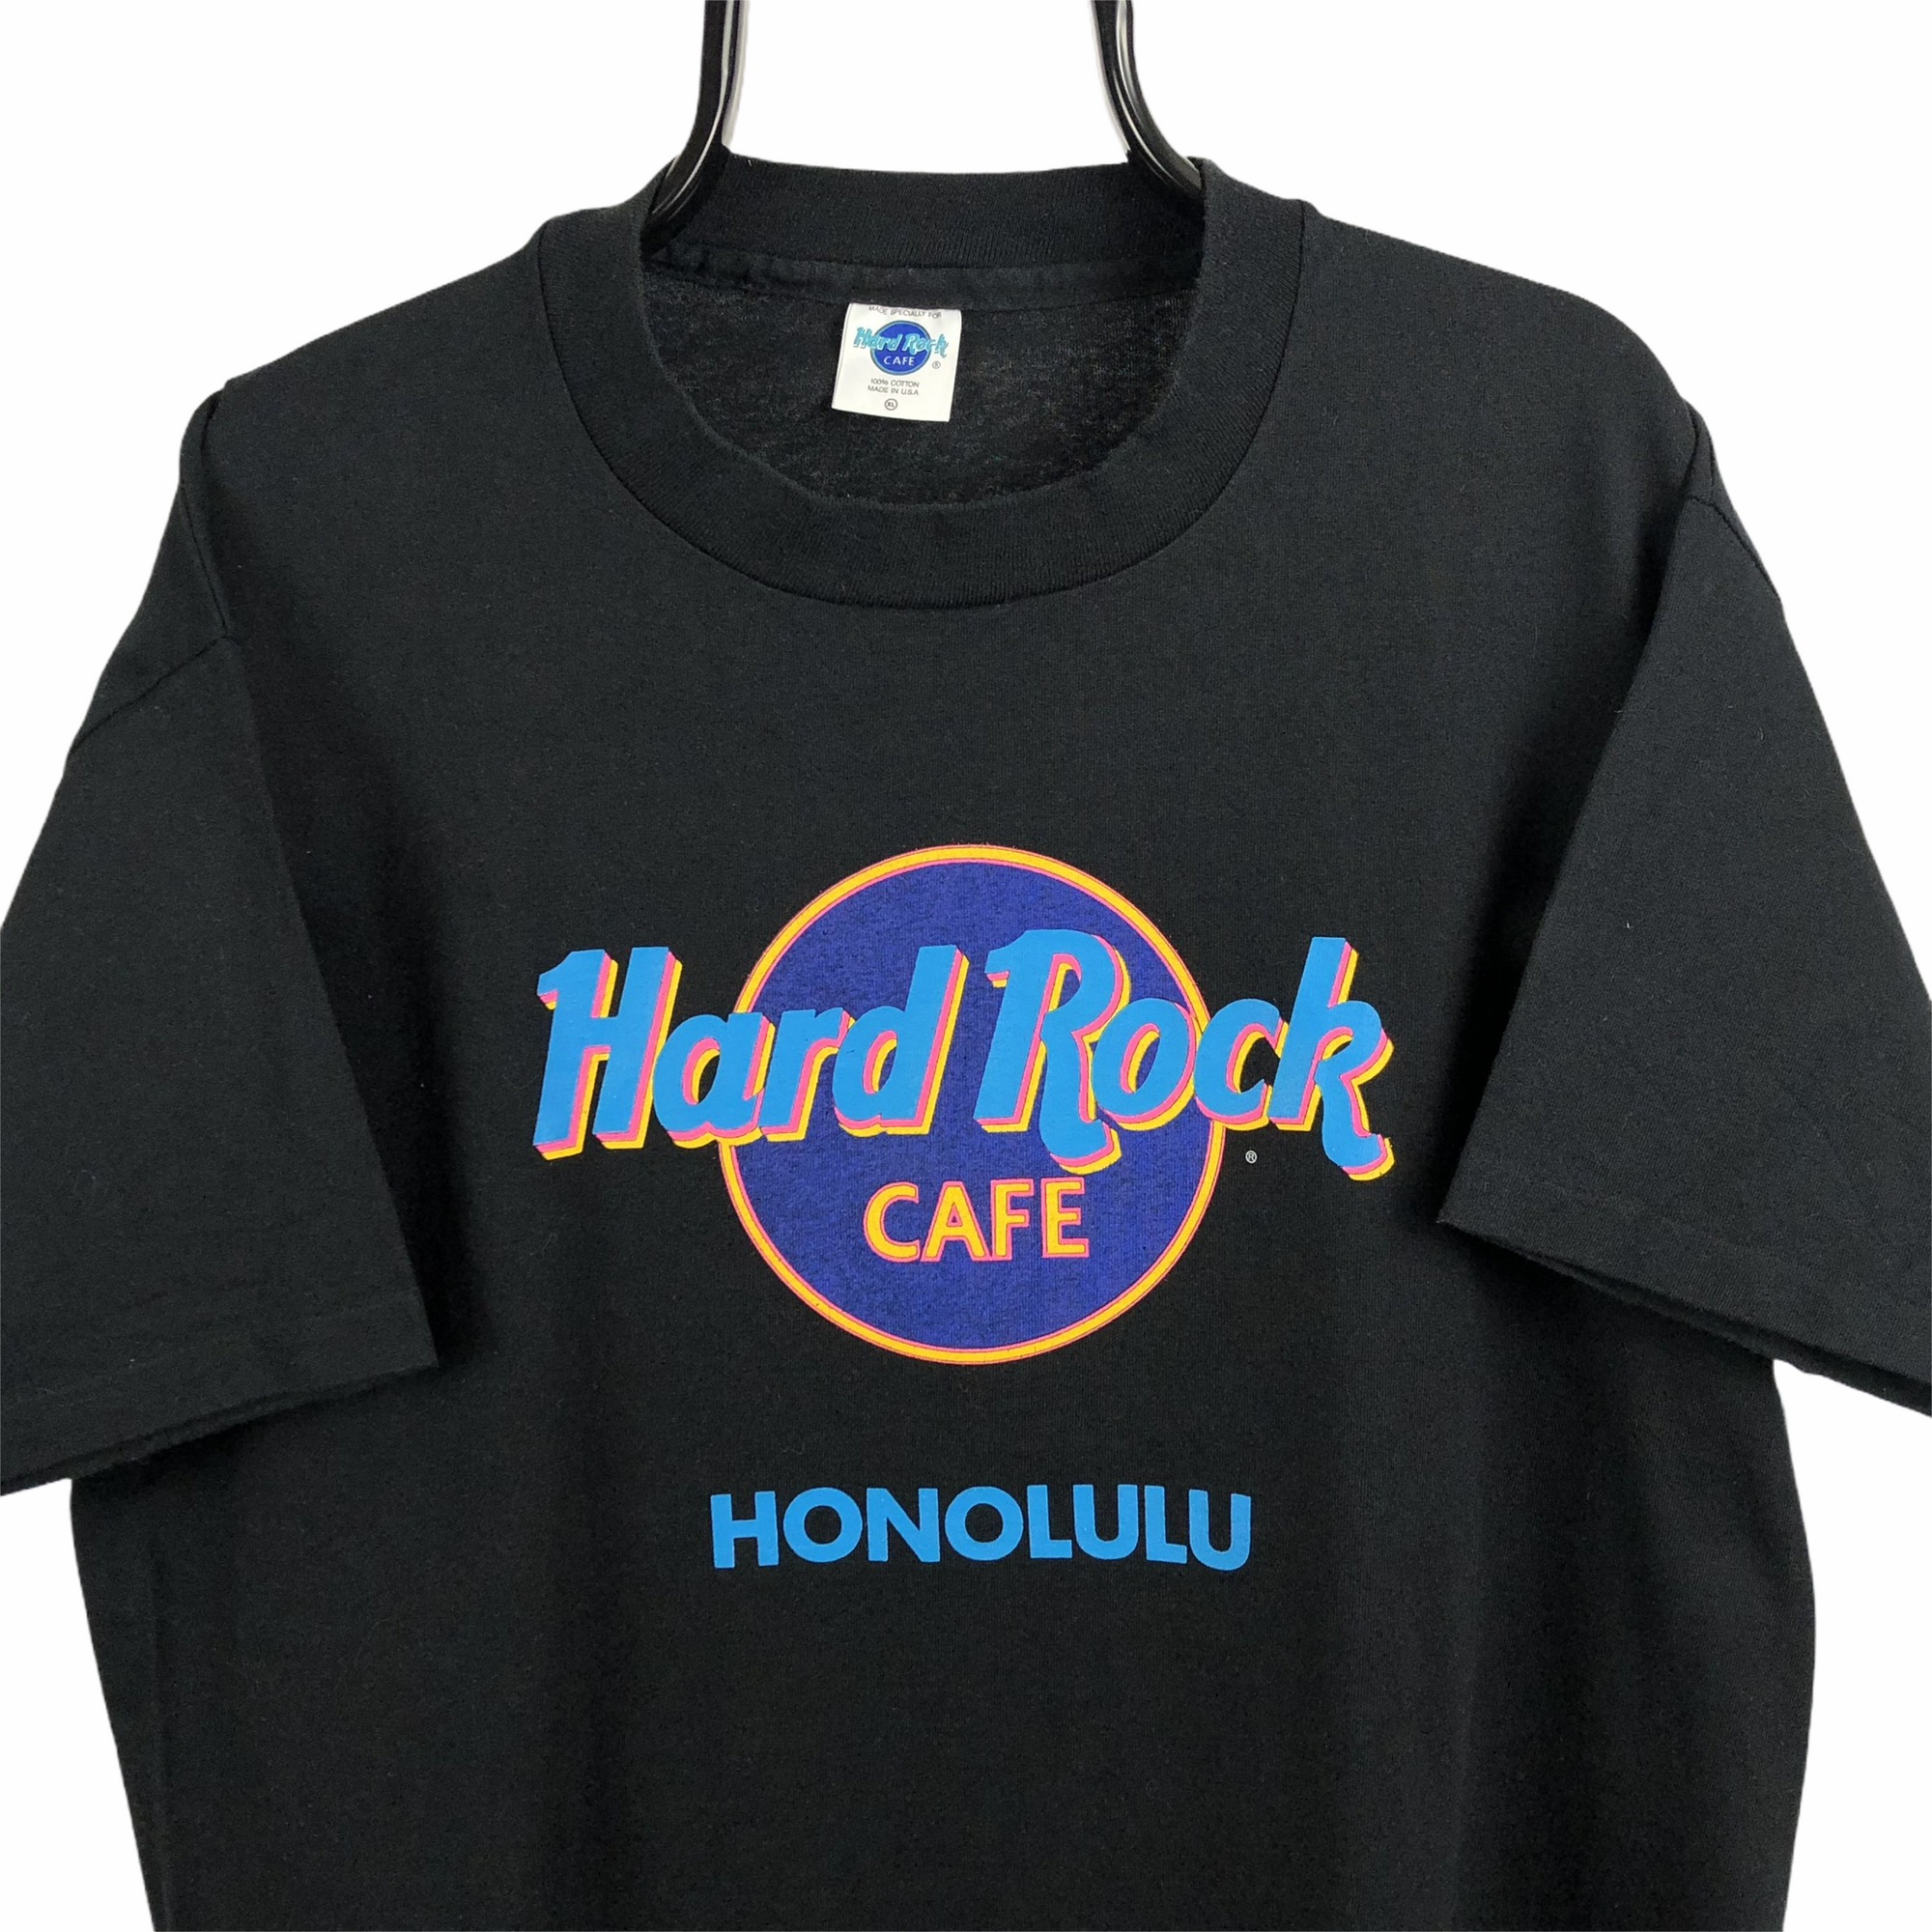 Vintage Hard Rock Cafe Honolulu Tee - Men's Large/Women's XL